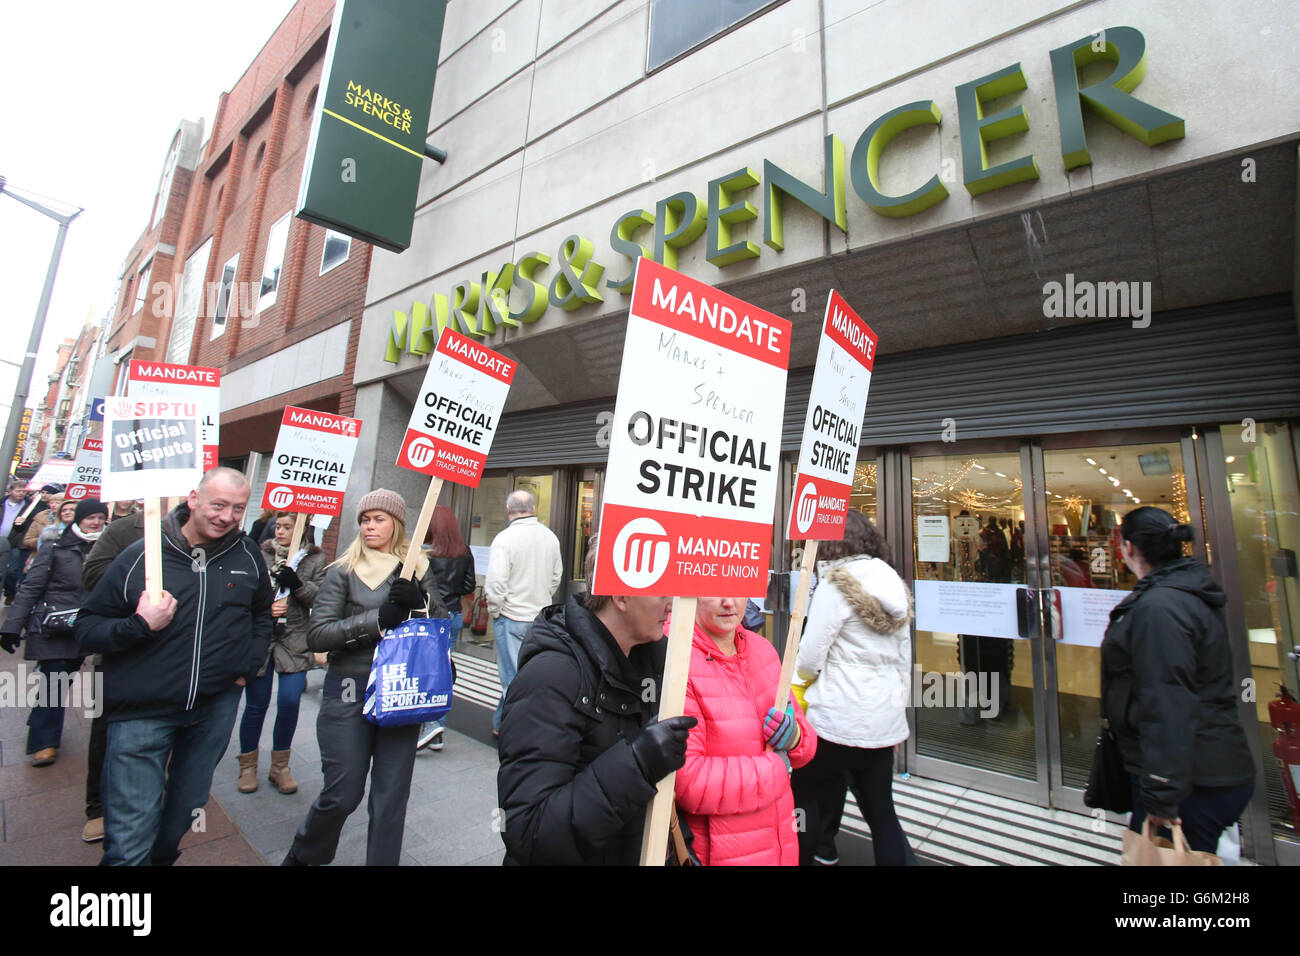 Mitarbeiter in Marks und Spencer Henry Street Store in Dublin Mann Streikposten als Mitarbeiter inszenierte einen Streik über eine Rente Streit und andere Kosteneinschneidungs Vorschläge. Stockfoto